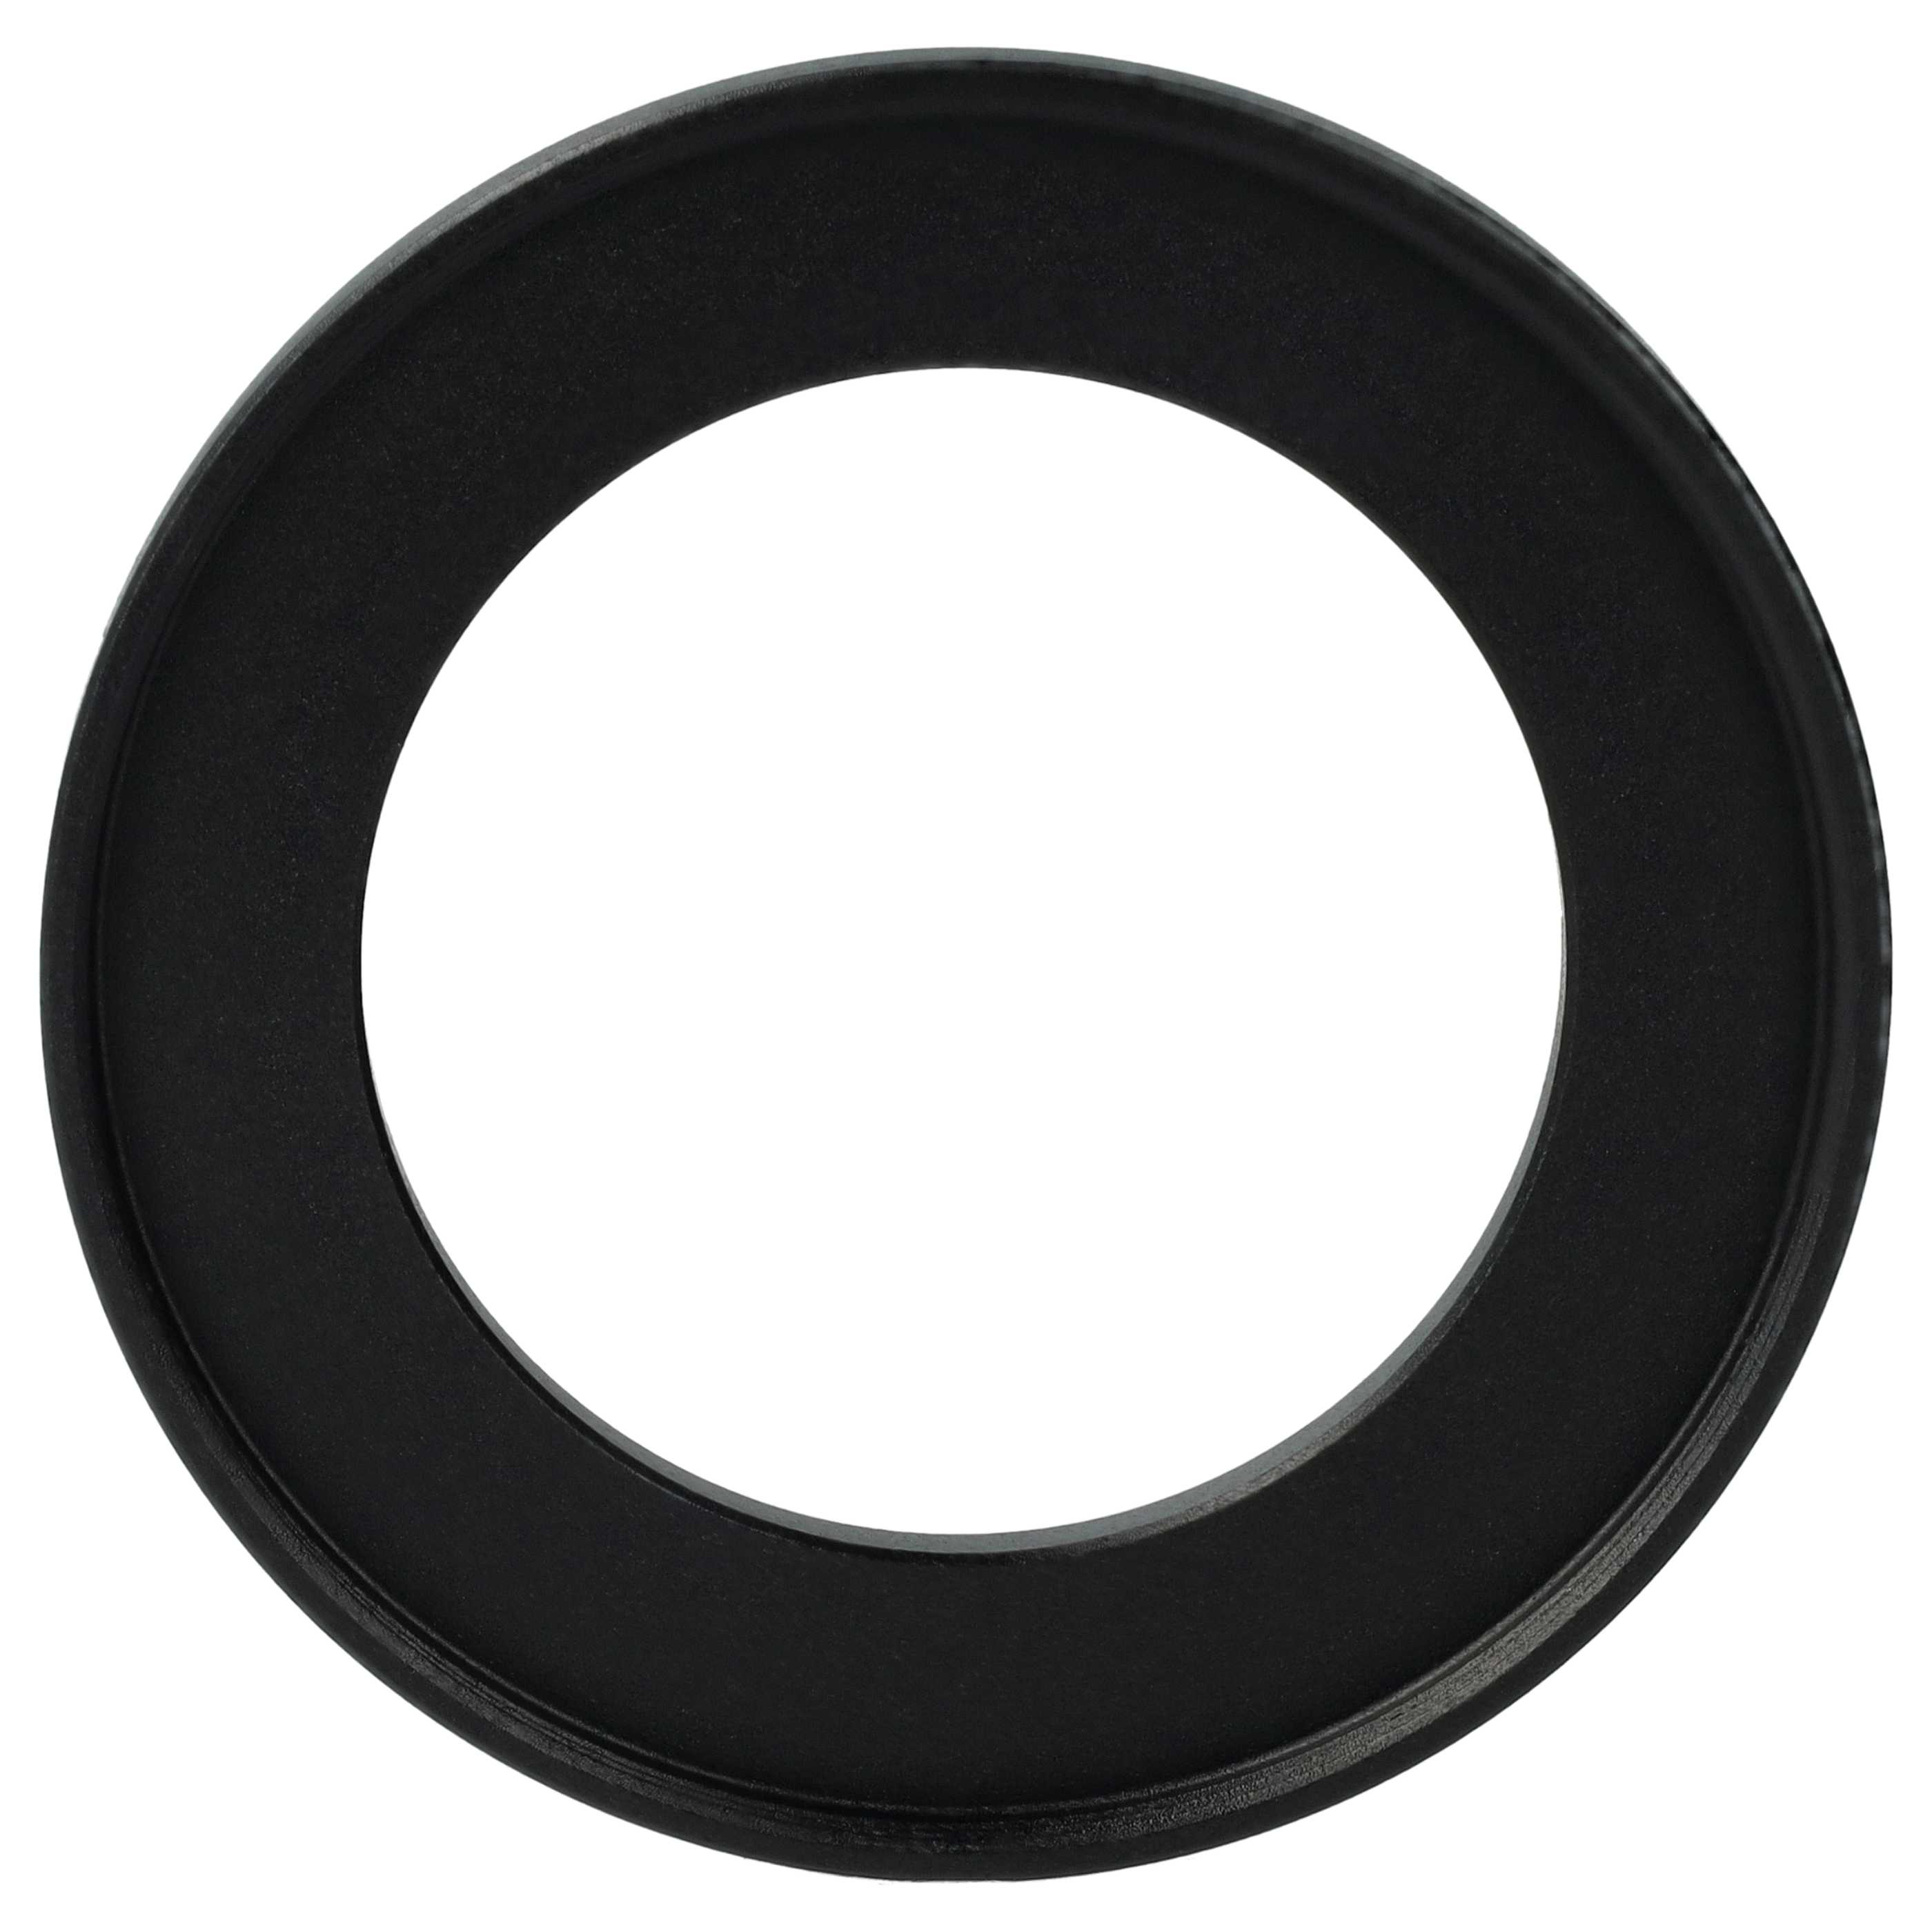 Redukcja filtrowa adapter 40,5 mm na 55 mm na różne obiektywy 